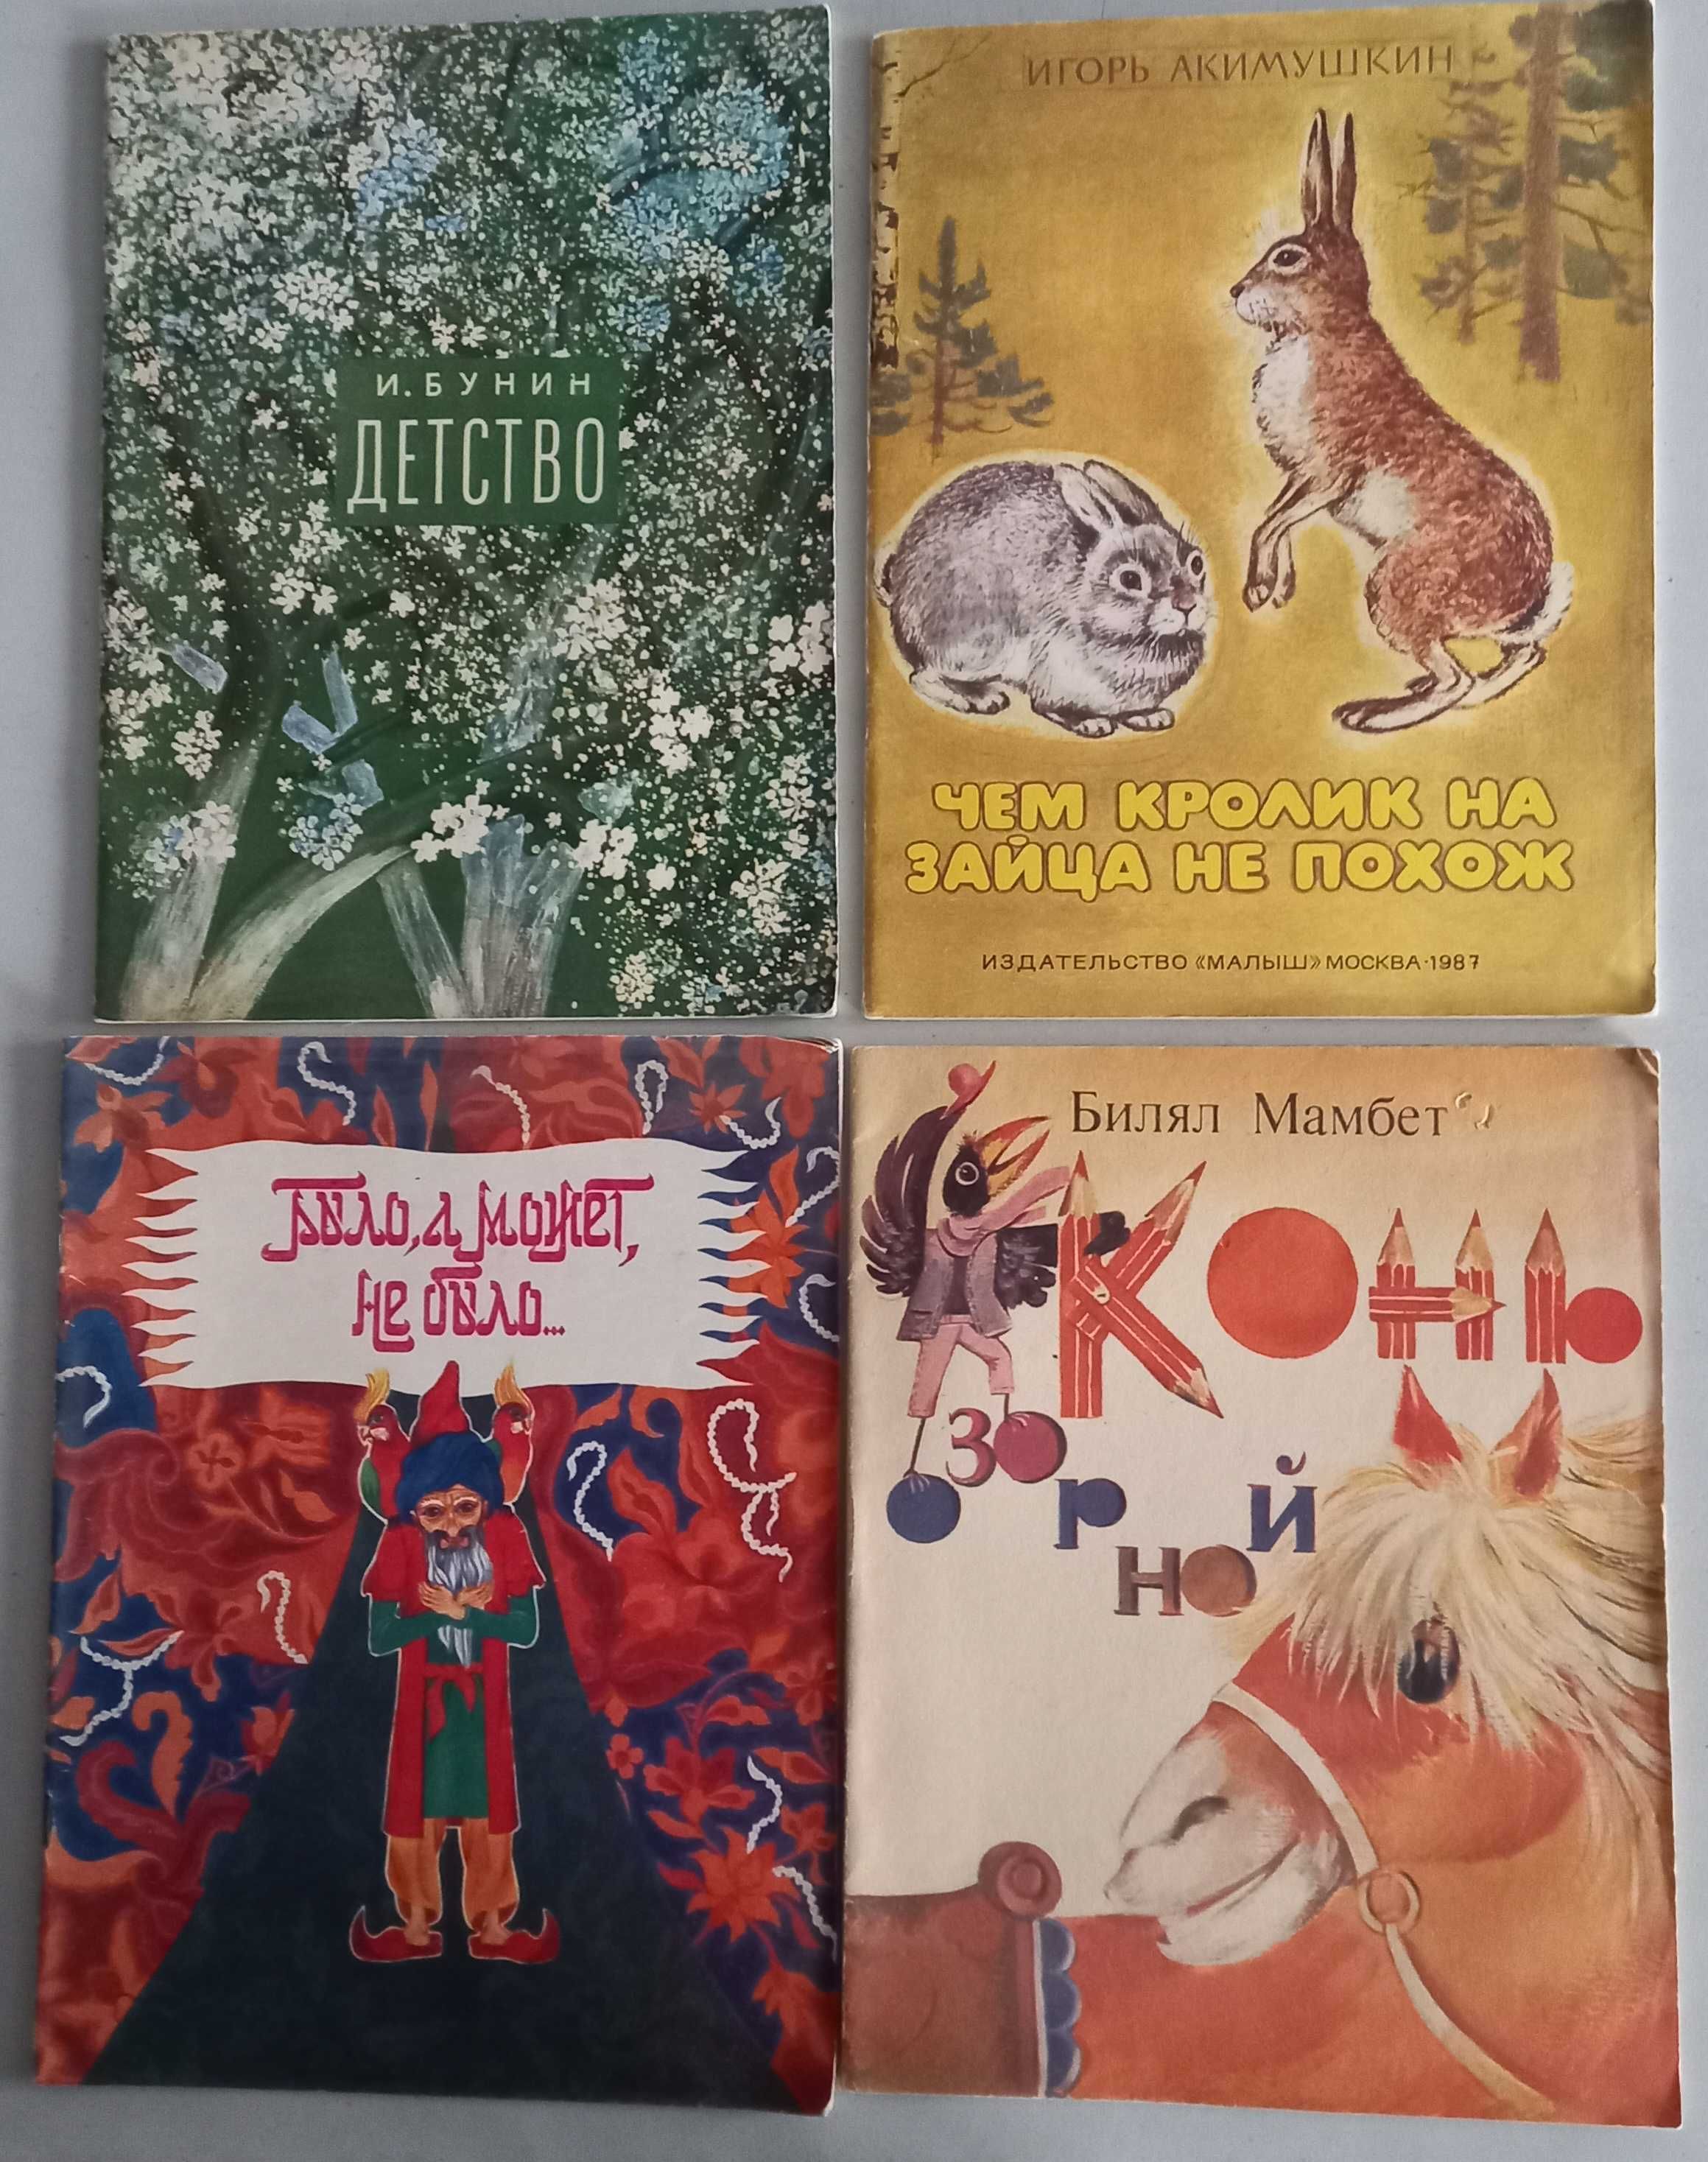 Детские иллюстрированные книги для дошкольного возраста, изд. в СССР